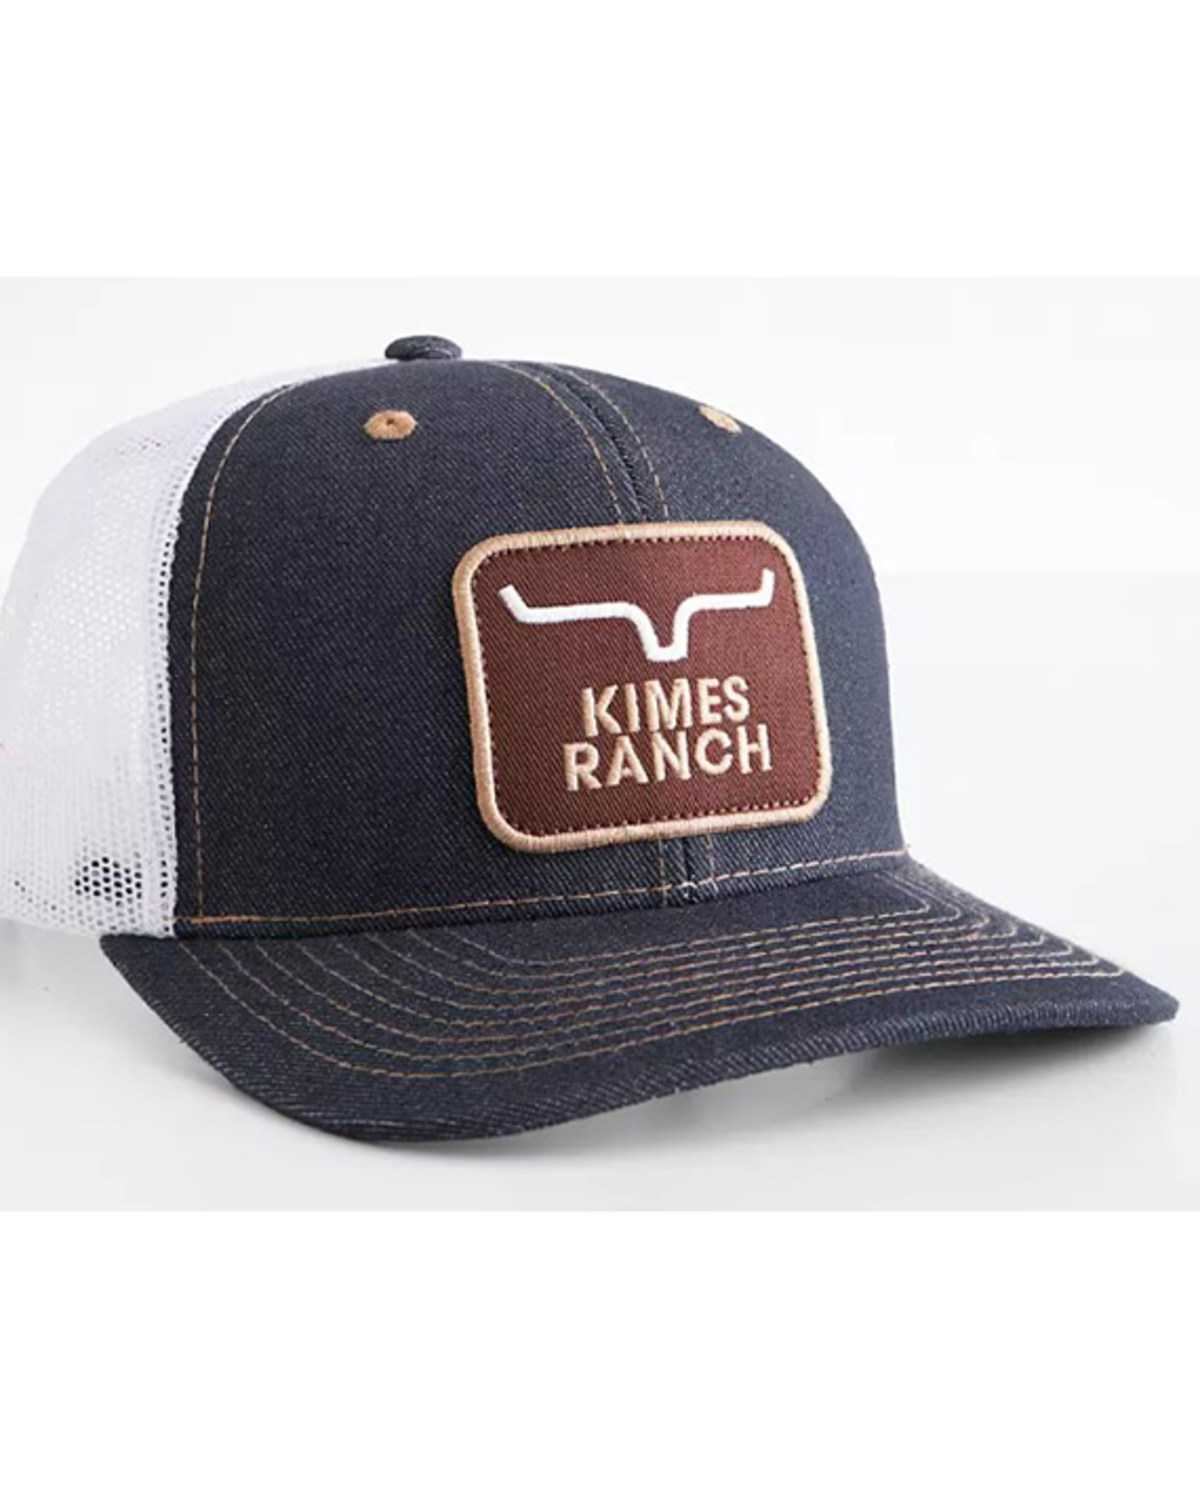 Kimes Ranch Men's Gilroy Trucker Cap